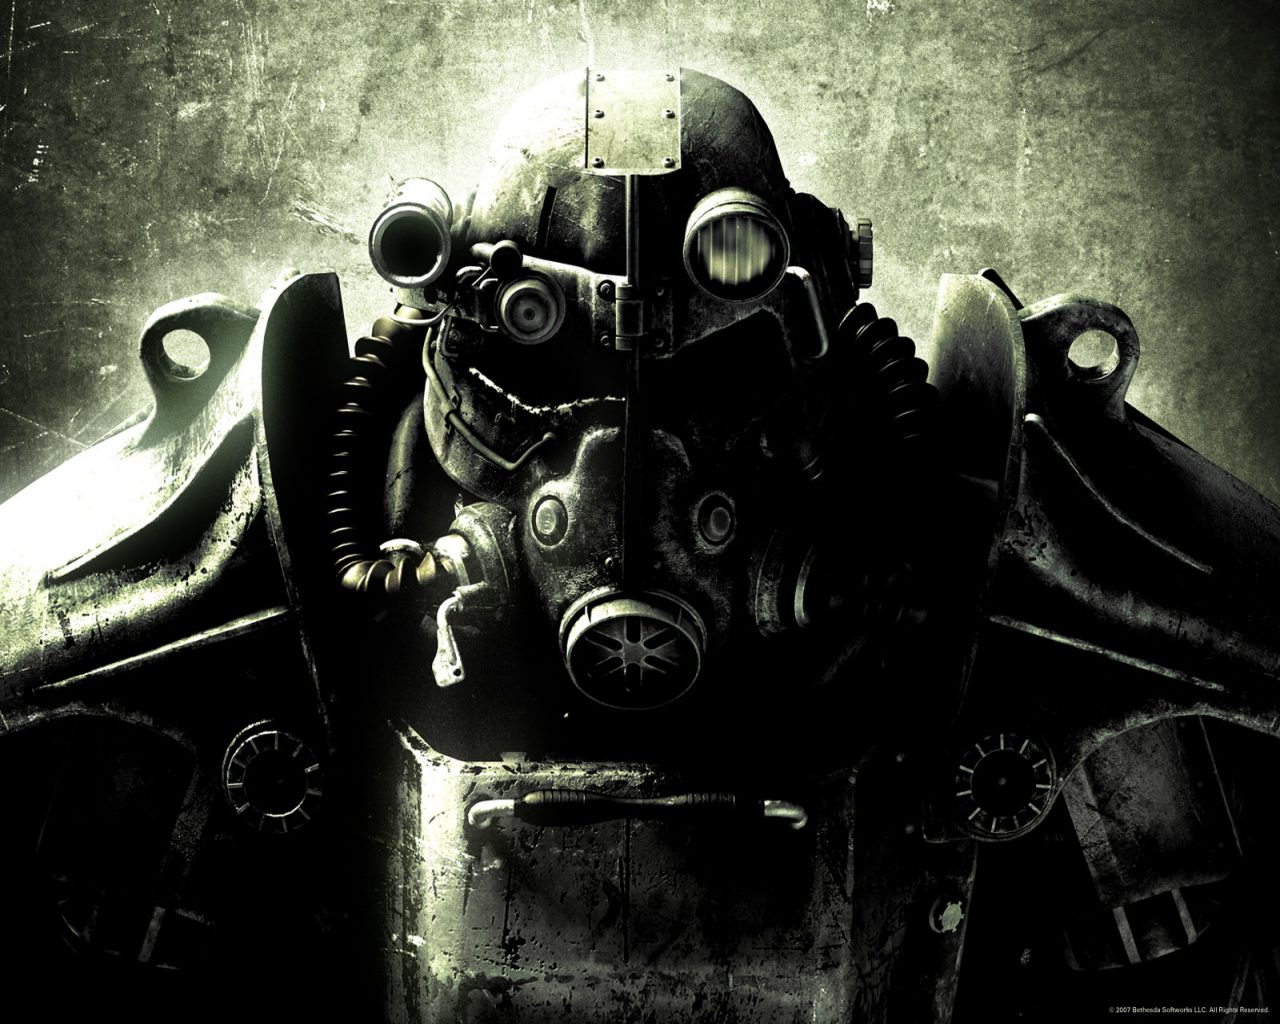 Wallpaper De Fallout A Fotos E Imagenes